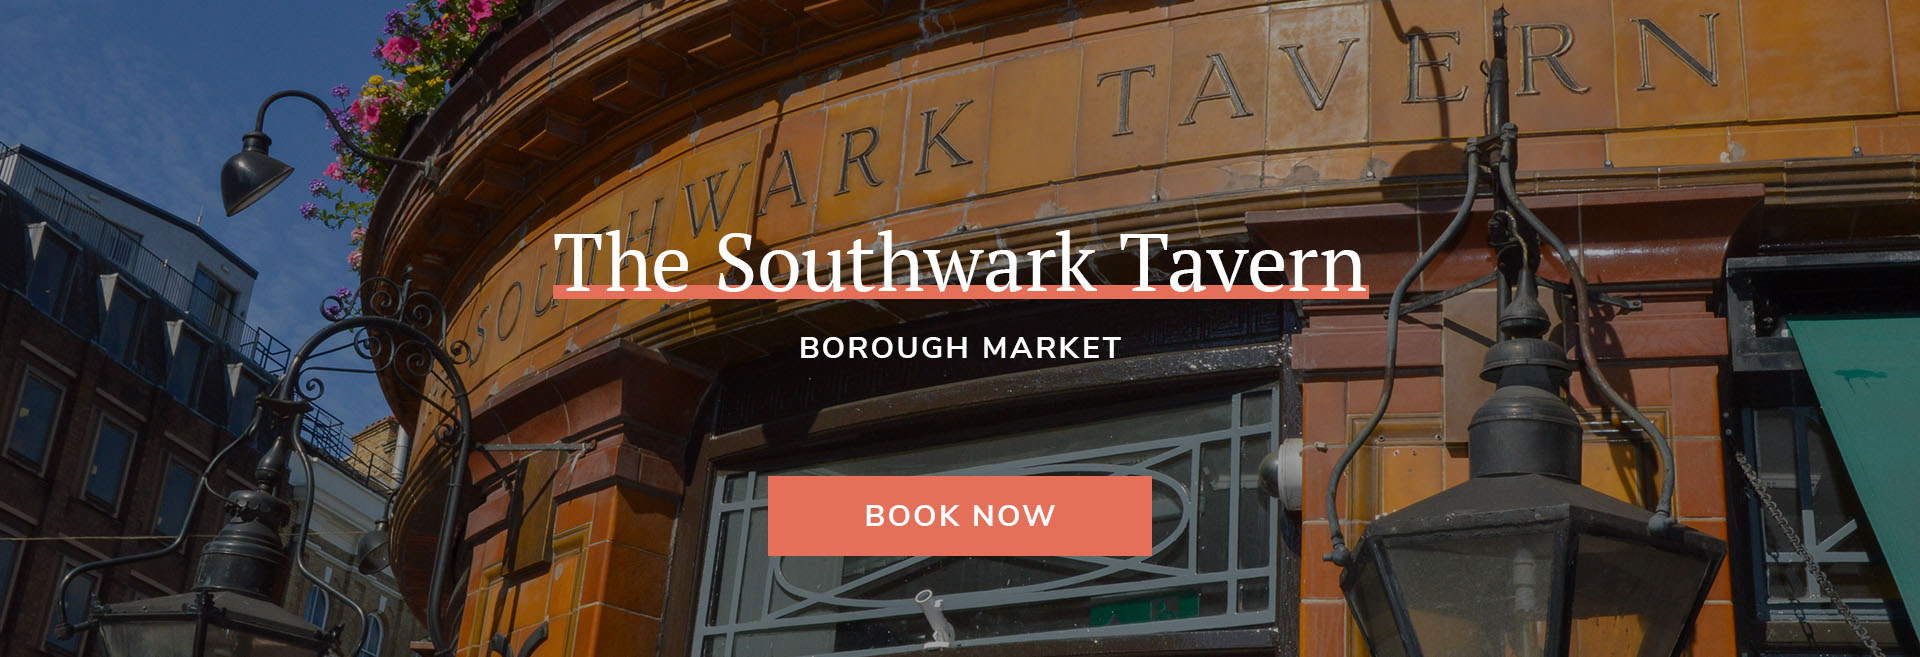 The Southwark Tavern Banner 1